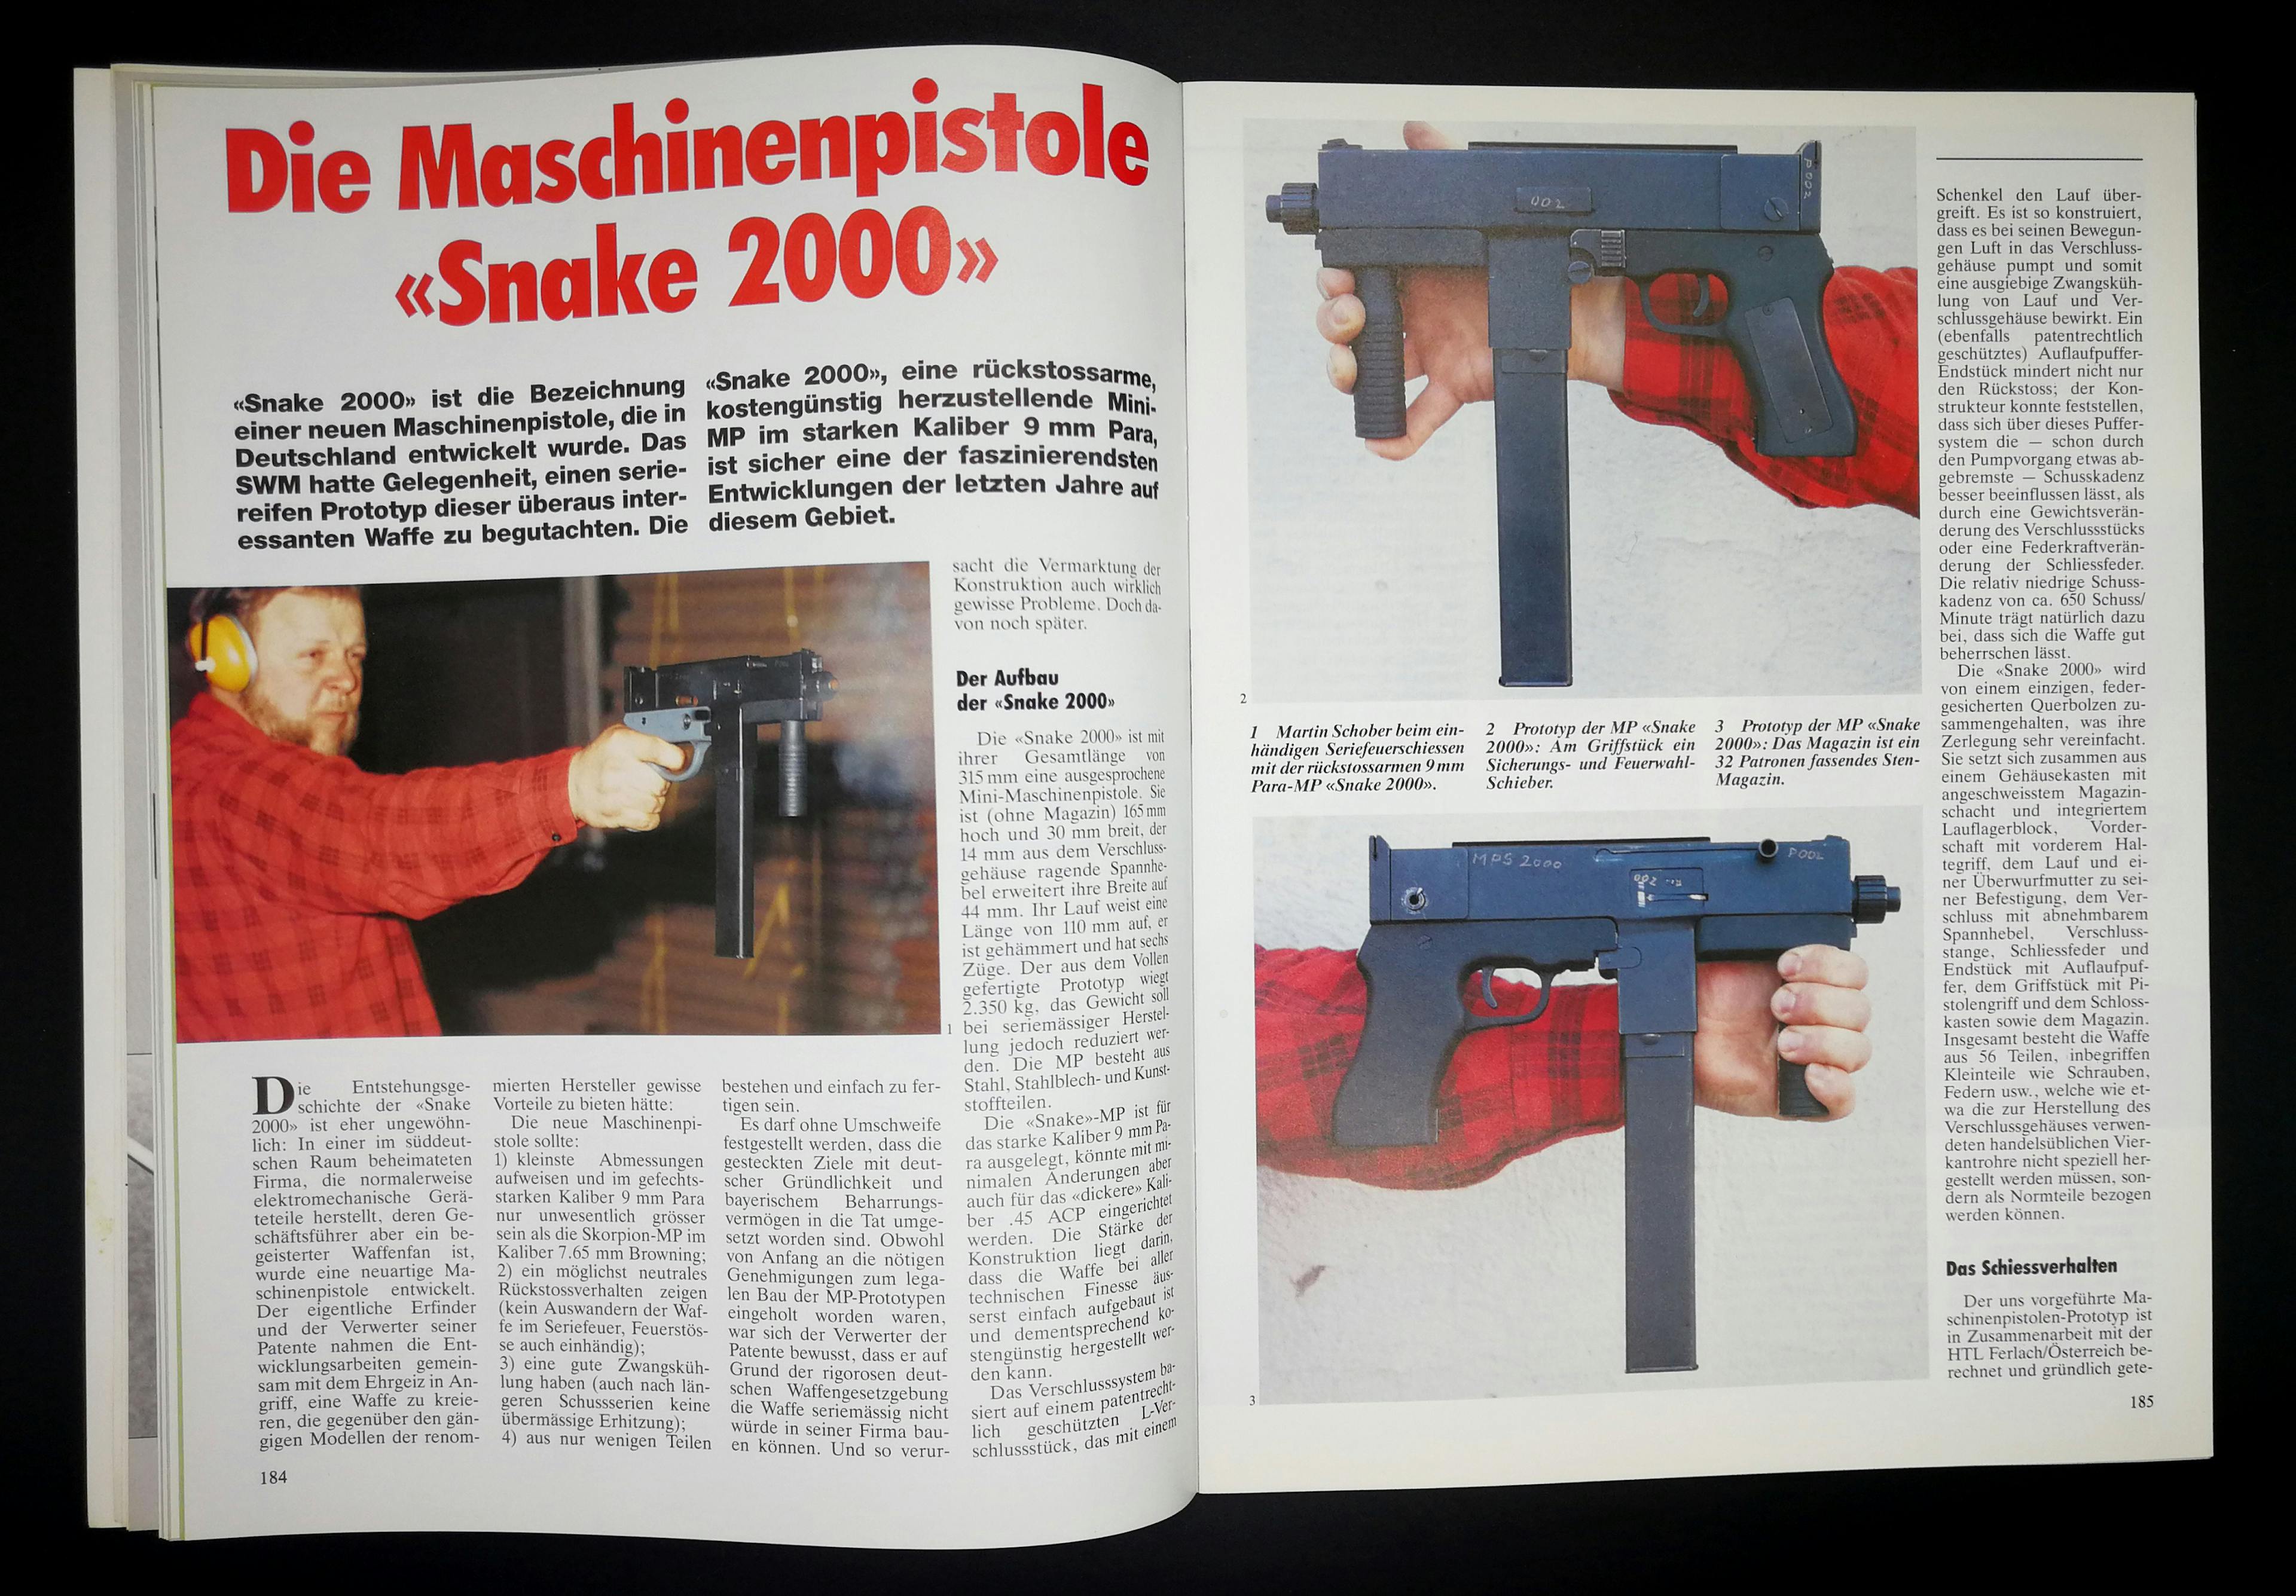 Ah, die Snake 2000 9mm-Maschinenpistole. Neugierig machende Waffe, doch ist wohl nichts aus ihr geworden. Das SWM testete hier einen Prototyp und geht im Artikel darauf ein, dass die Erfinder einen Hersteller für die Serienproduktion suchen.
